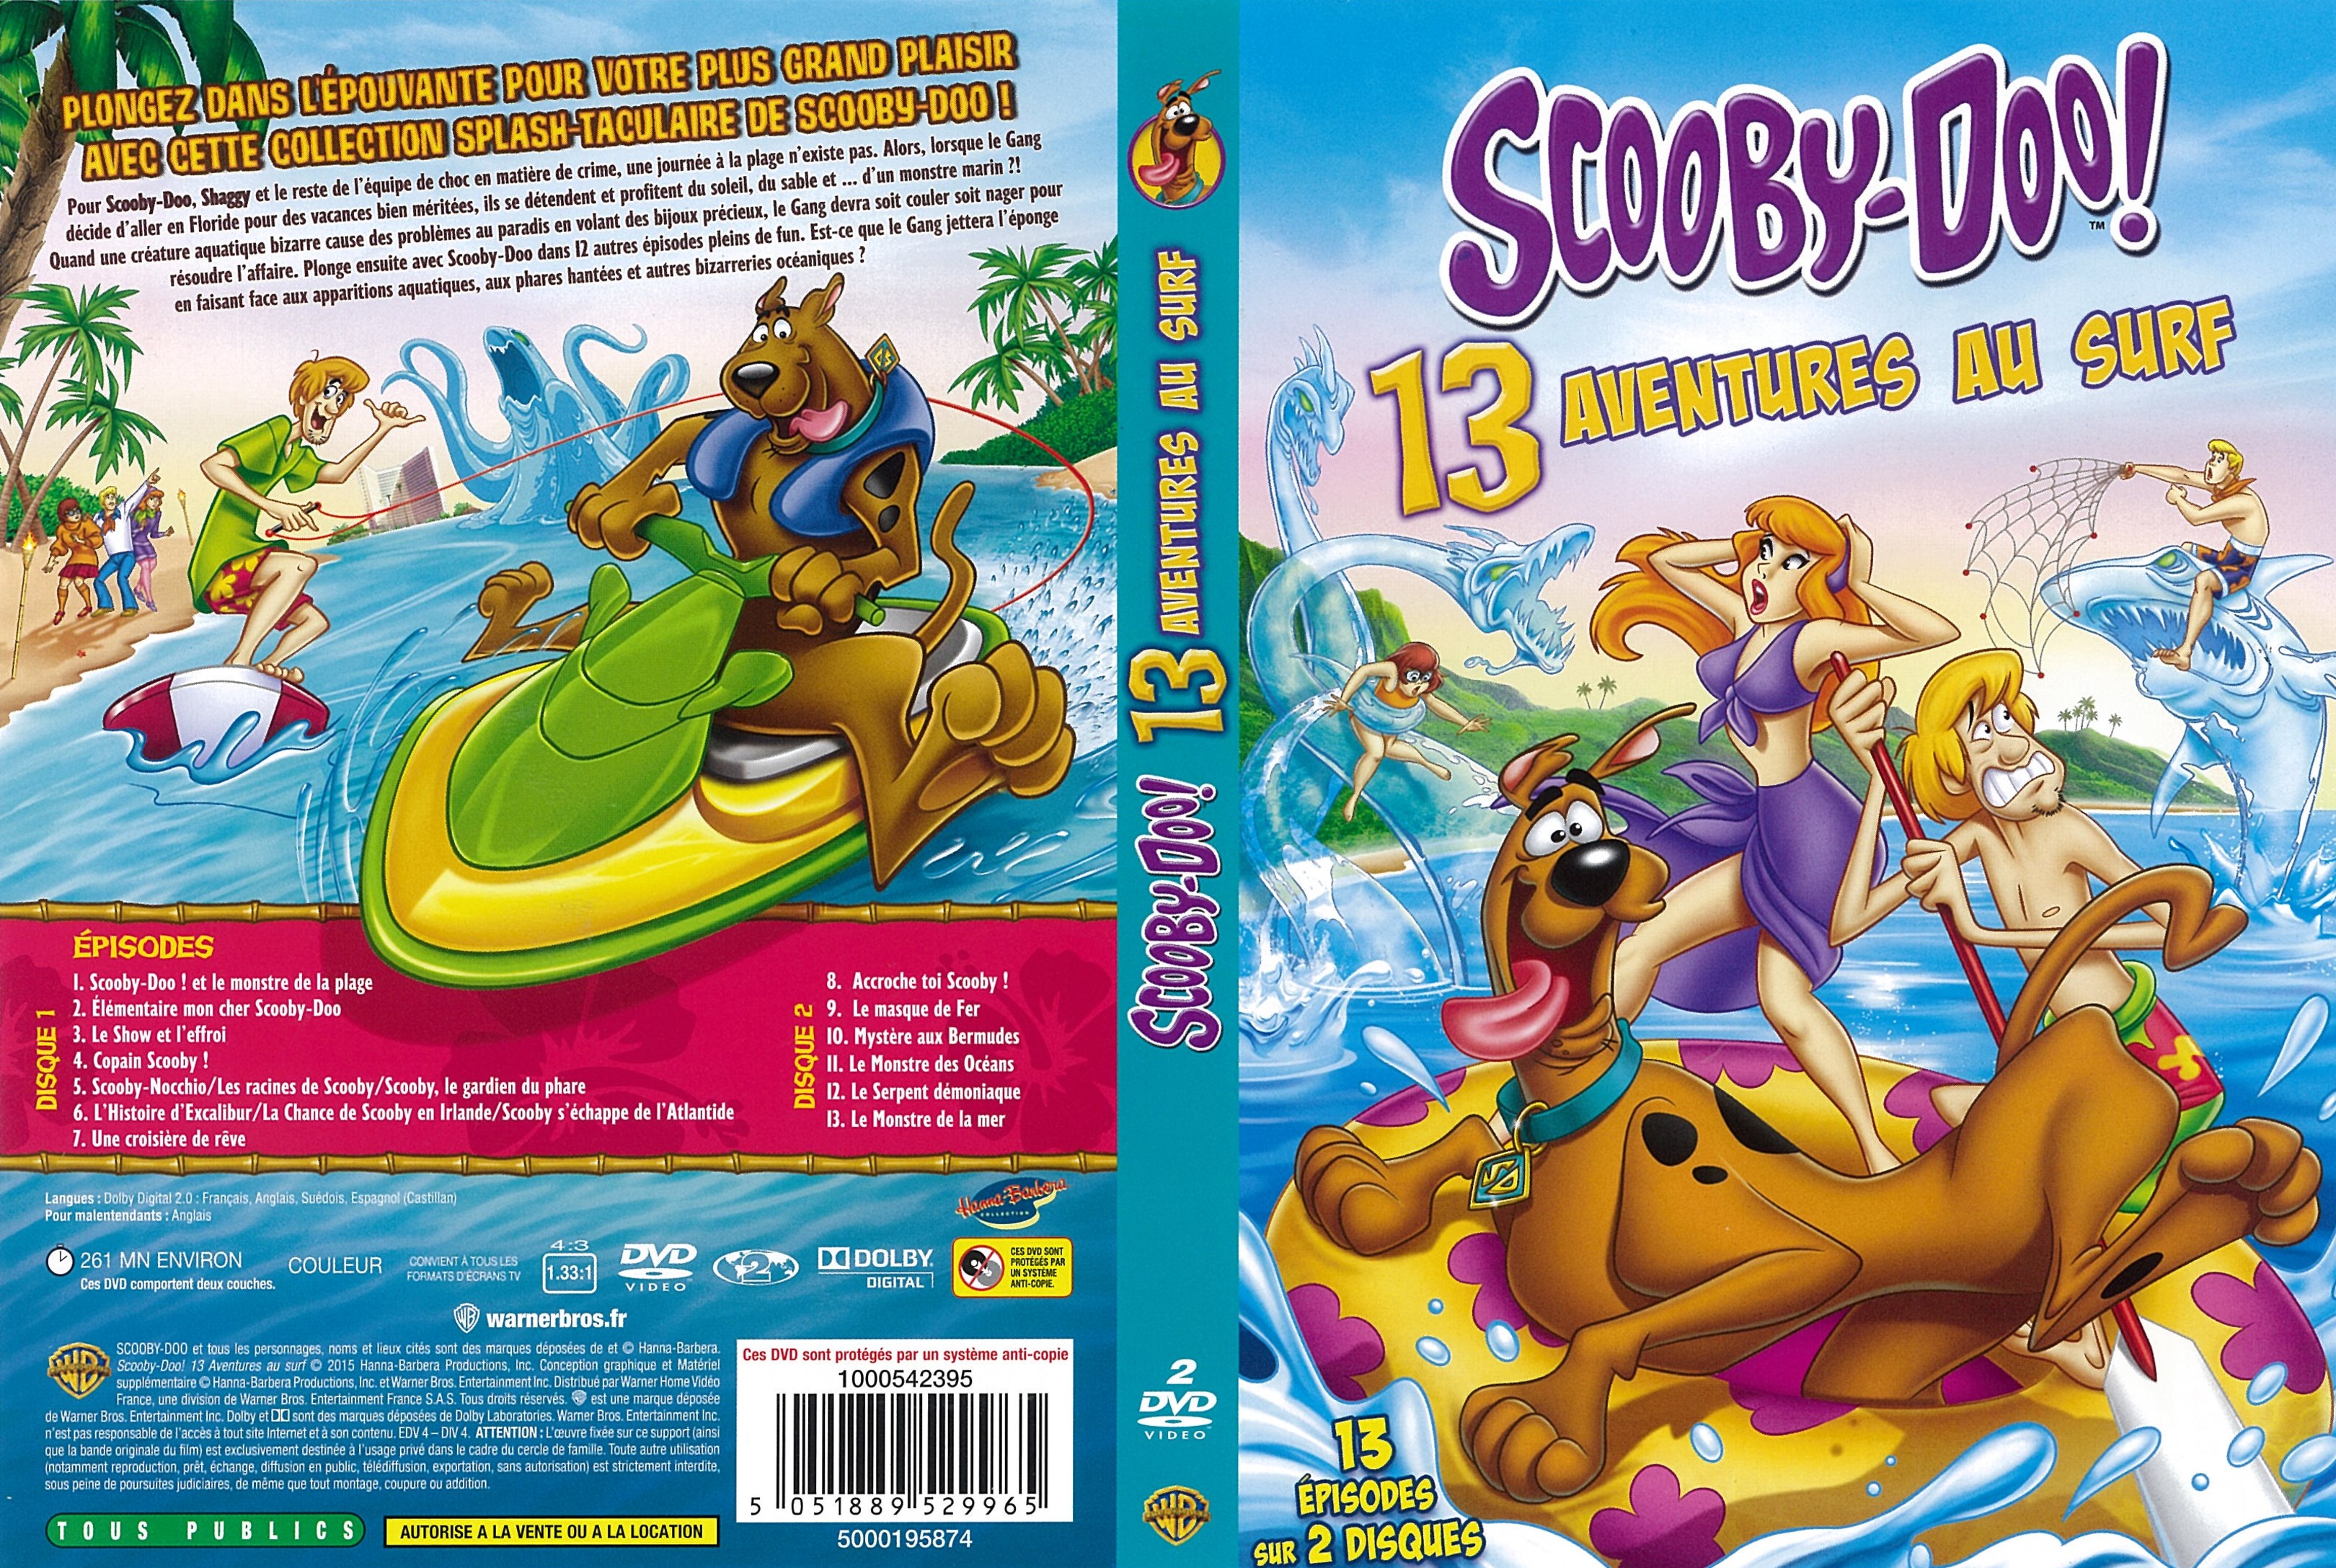 Jaquette DVD Scooby-Doo - 13 aventures au surf